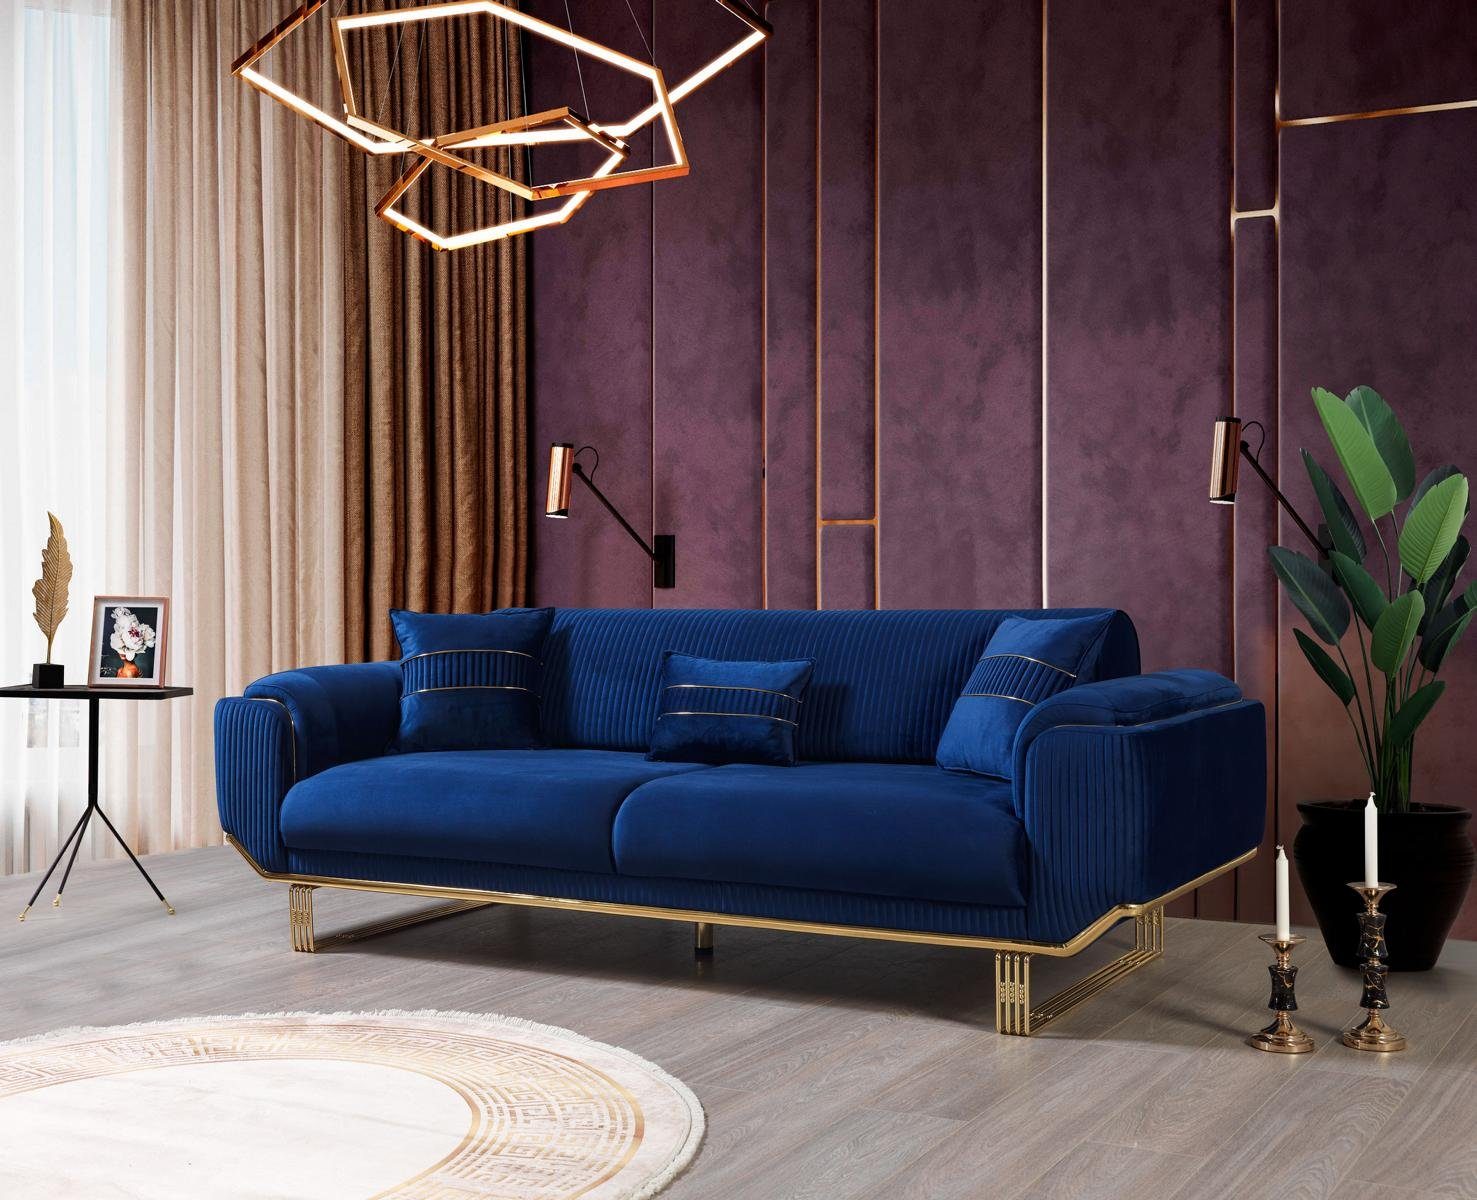 JVmoebel 3-Sitzer Luxus 3 Sitzer Sofa Wohnzimmer Blau Sofas Design Modern,  Made in Europe